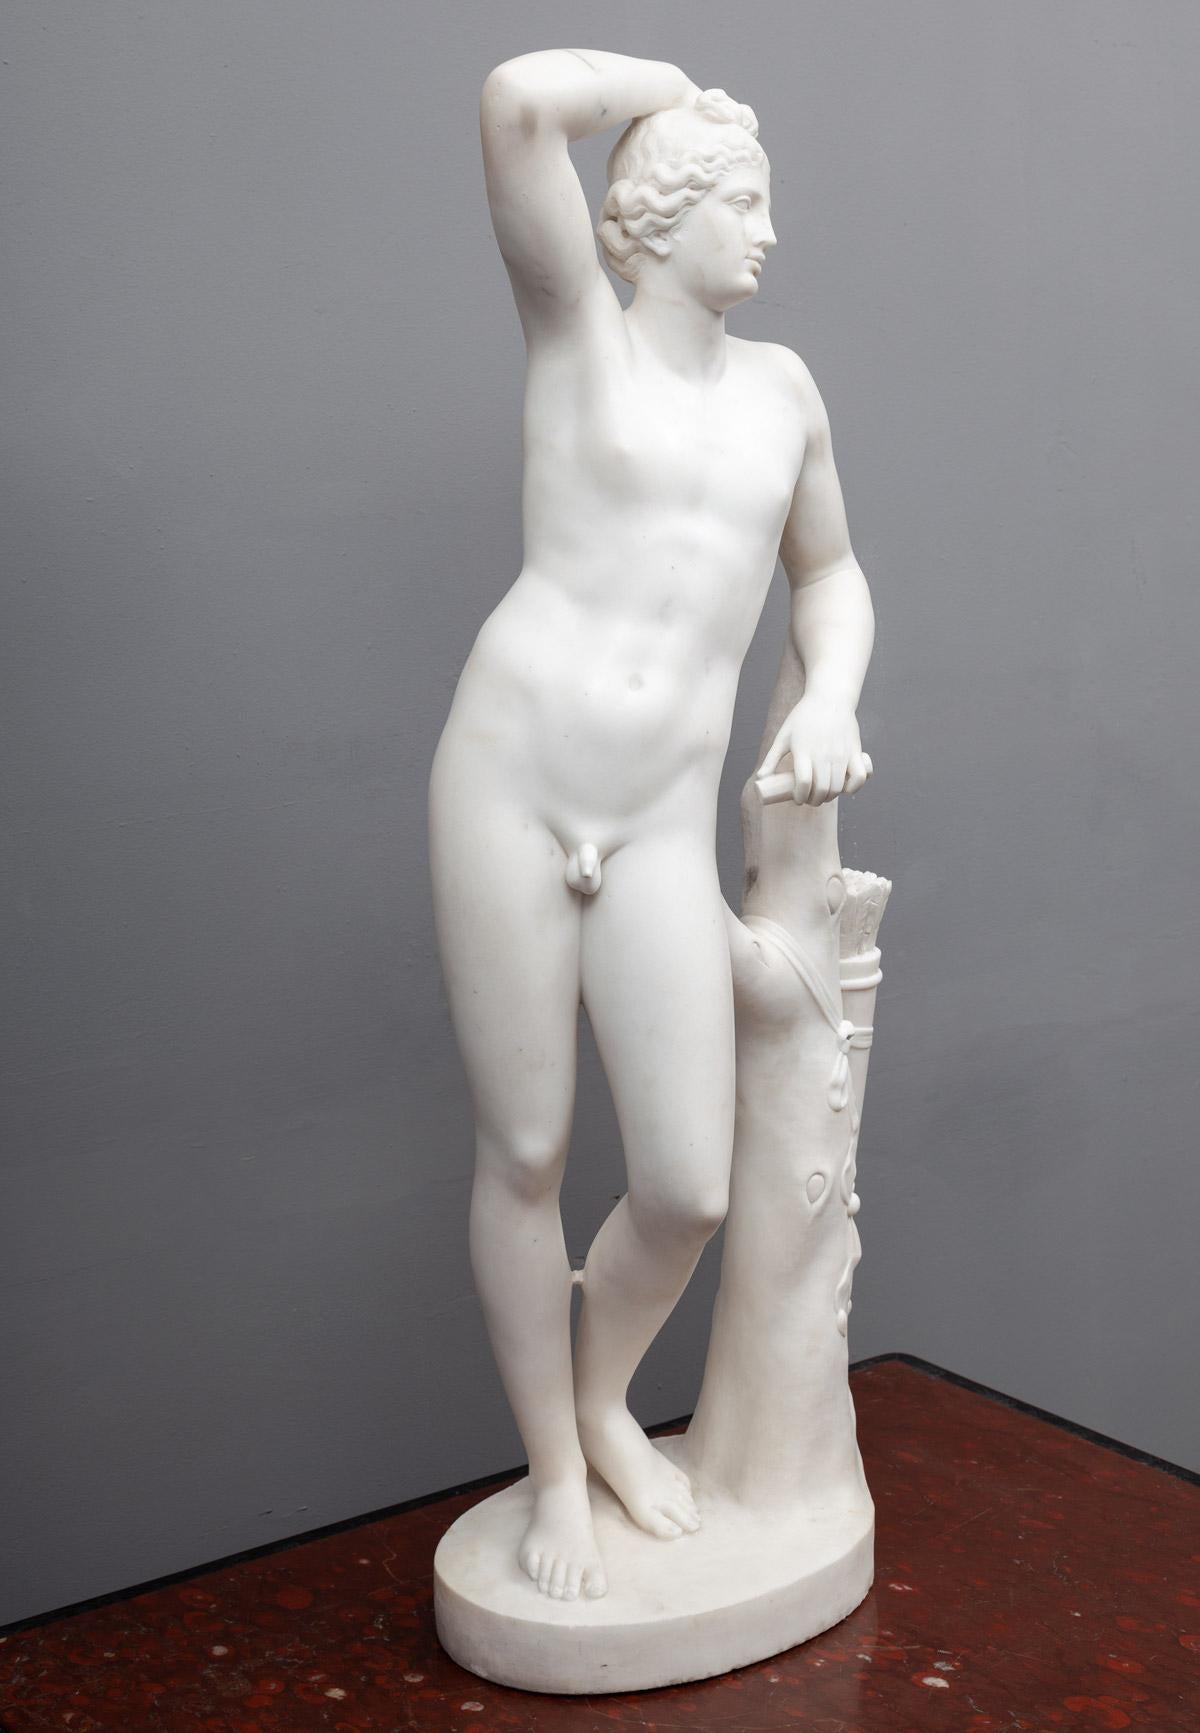 Eine wunderschön geschnitzte antike Statuenstatue aus Carrara-Marmor von Adonis.
Die männliche Figur ist nackt an einen Baum gelehnt abgebildet.
Adonis war in der griechischen Mythologie der sterbliche Geliebte der Göttin Aphrodite.